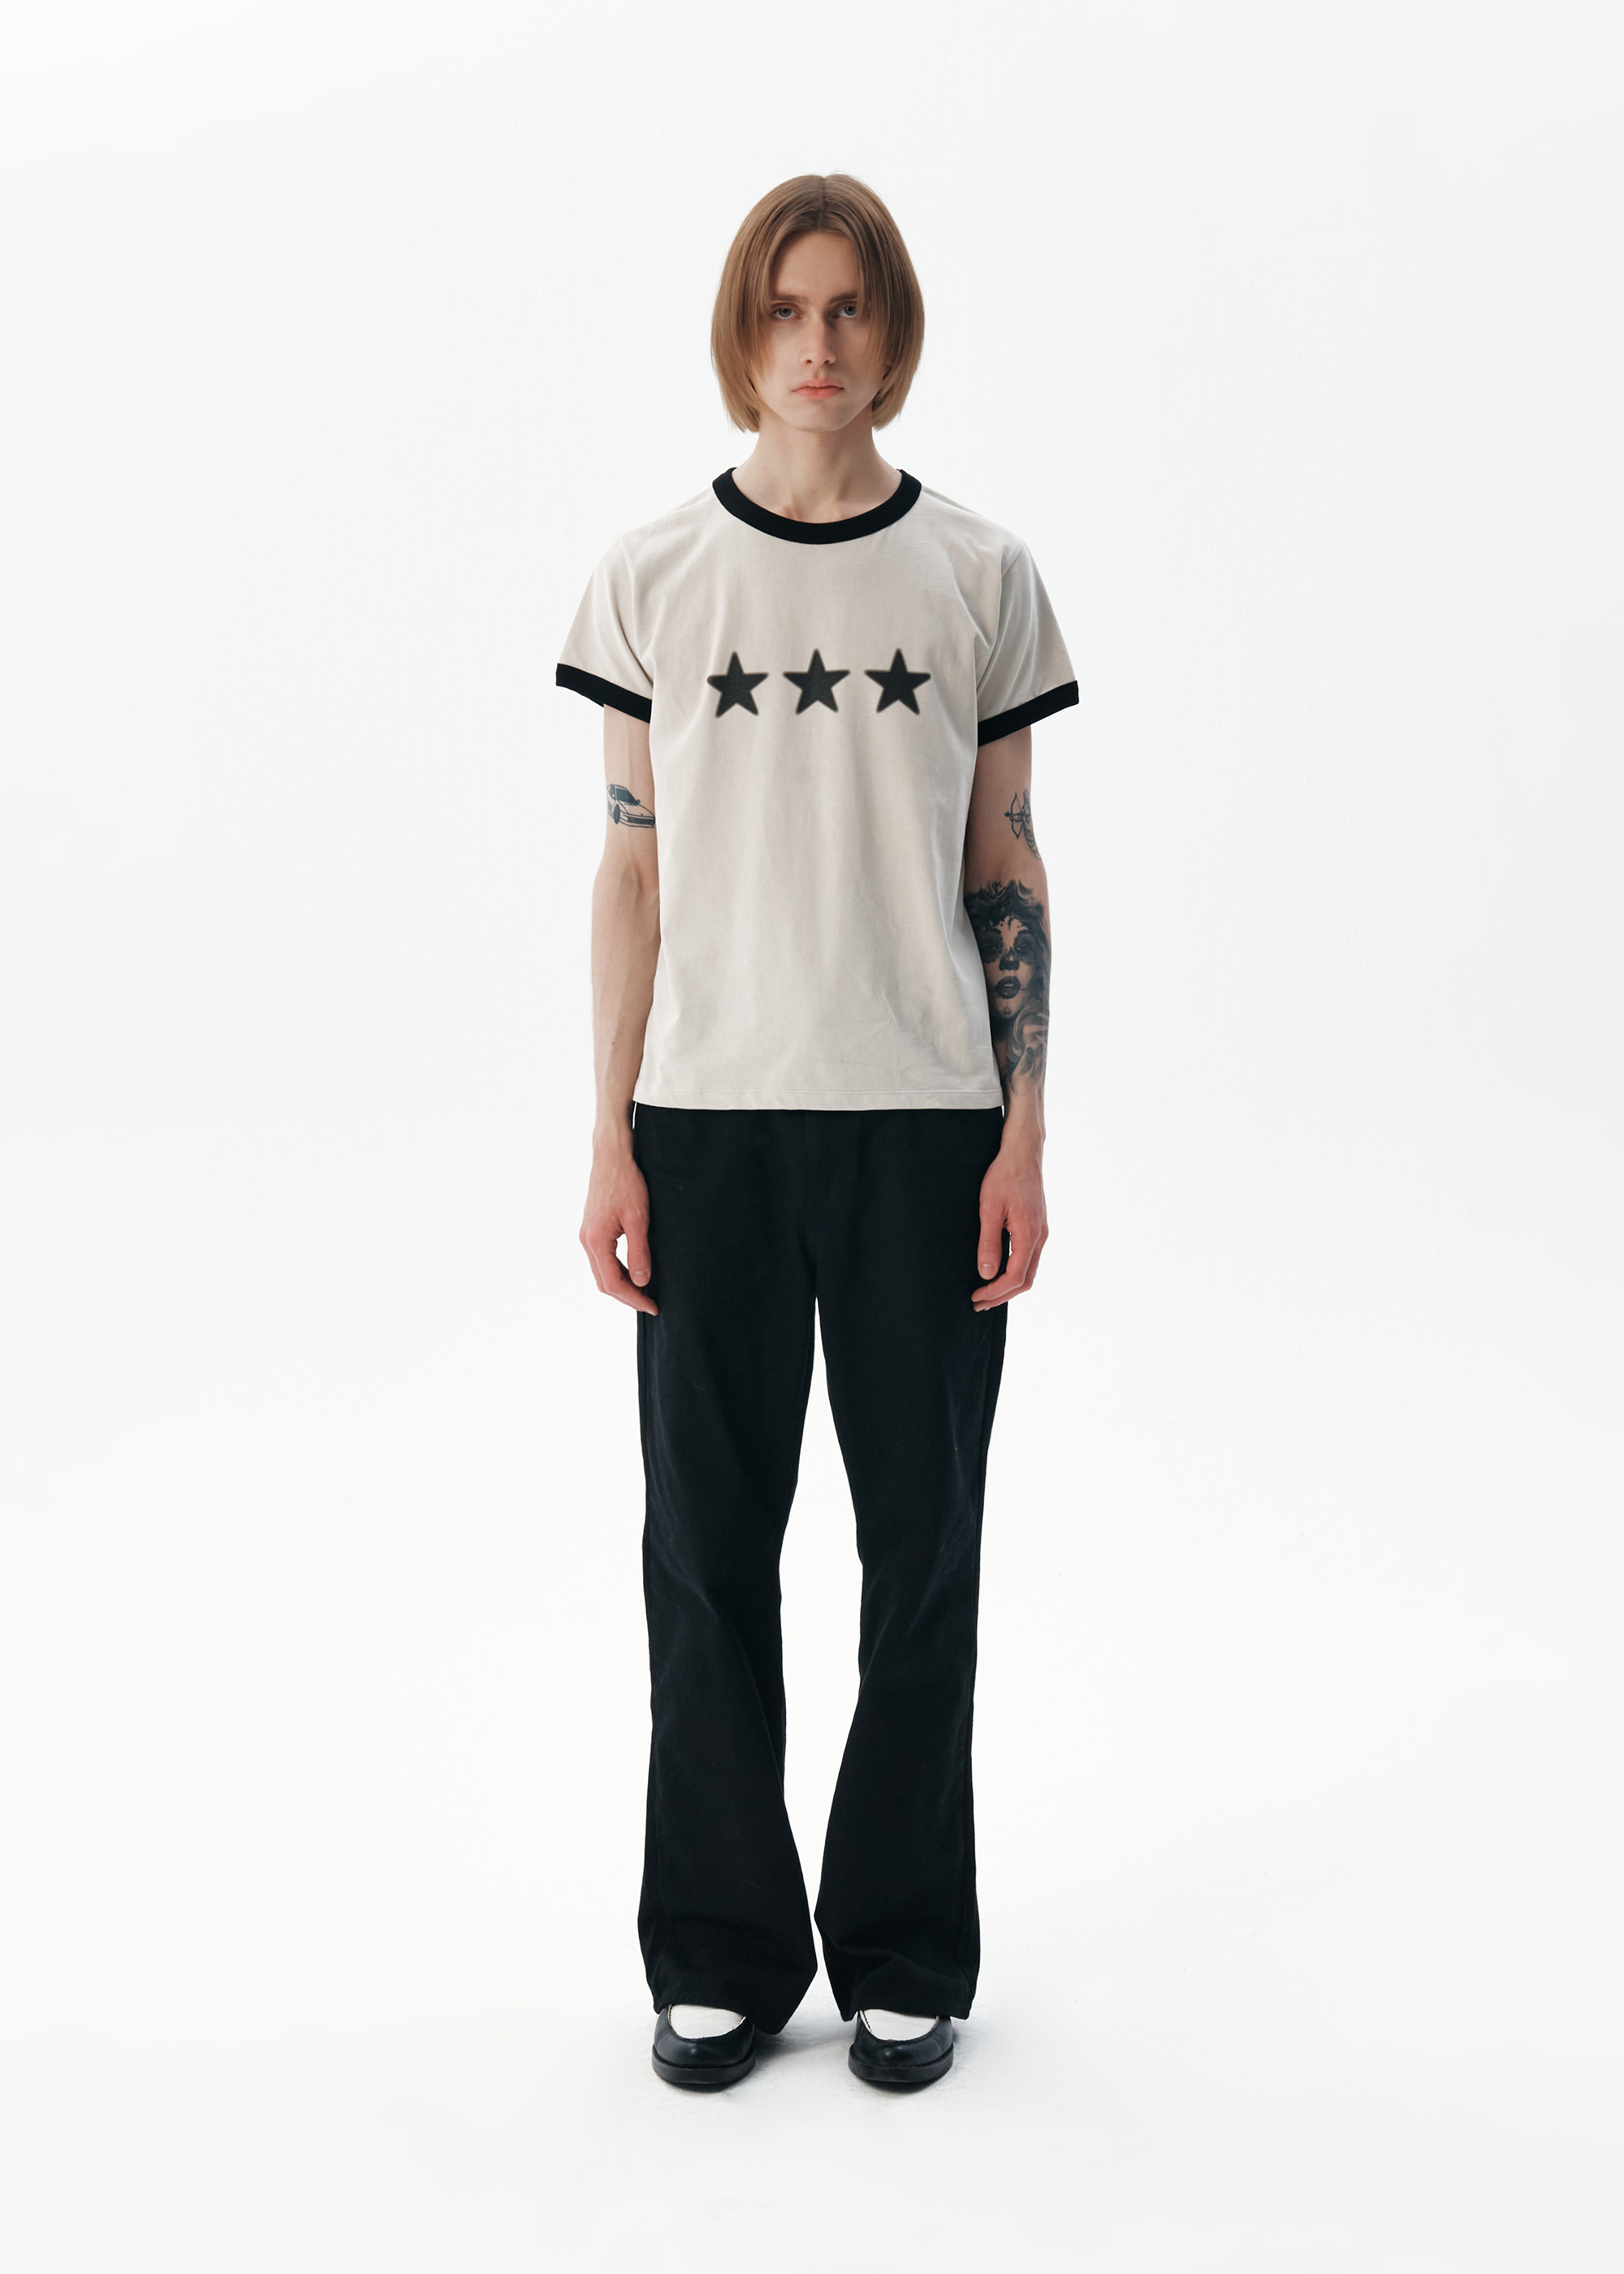 Star Ringer T-shirt [Light Grey] (5/24 예약배송)